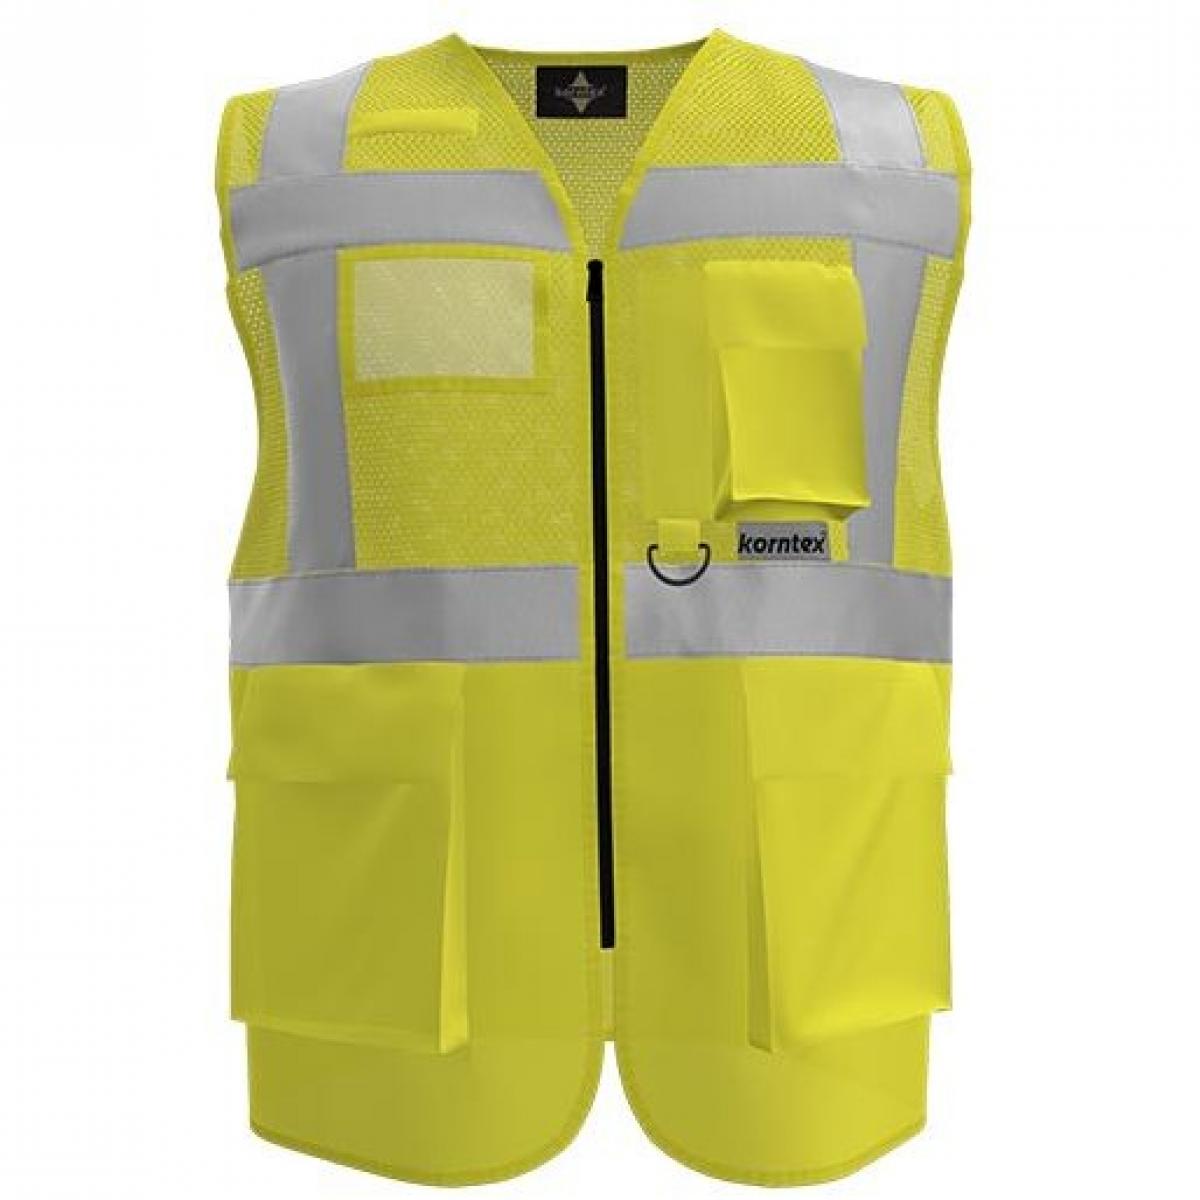 Hersteller: Korntex Herstellernummer: KXEXQ Artikelbezeichnung: Multifunkitons-Warnweste Mesh Multifunction Vest Farbe: Signal Yellow